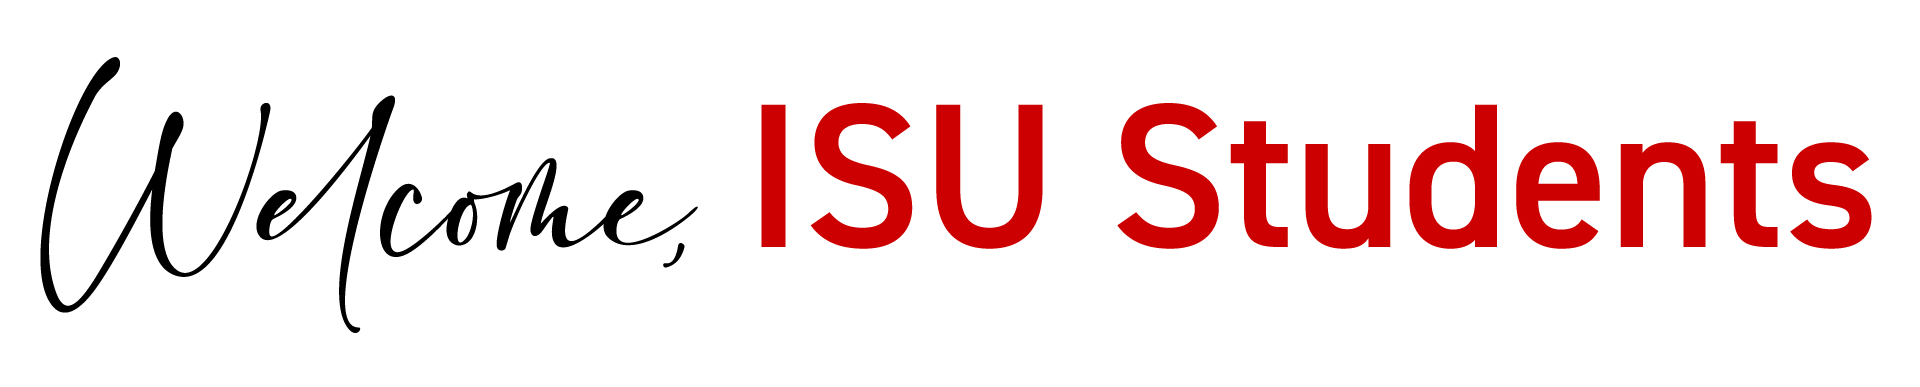 Welcome, ISU Students